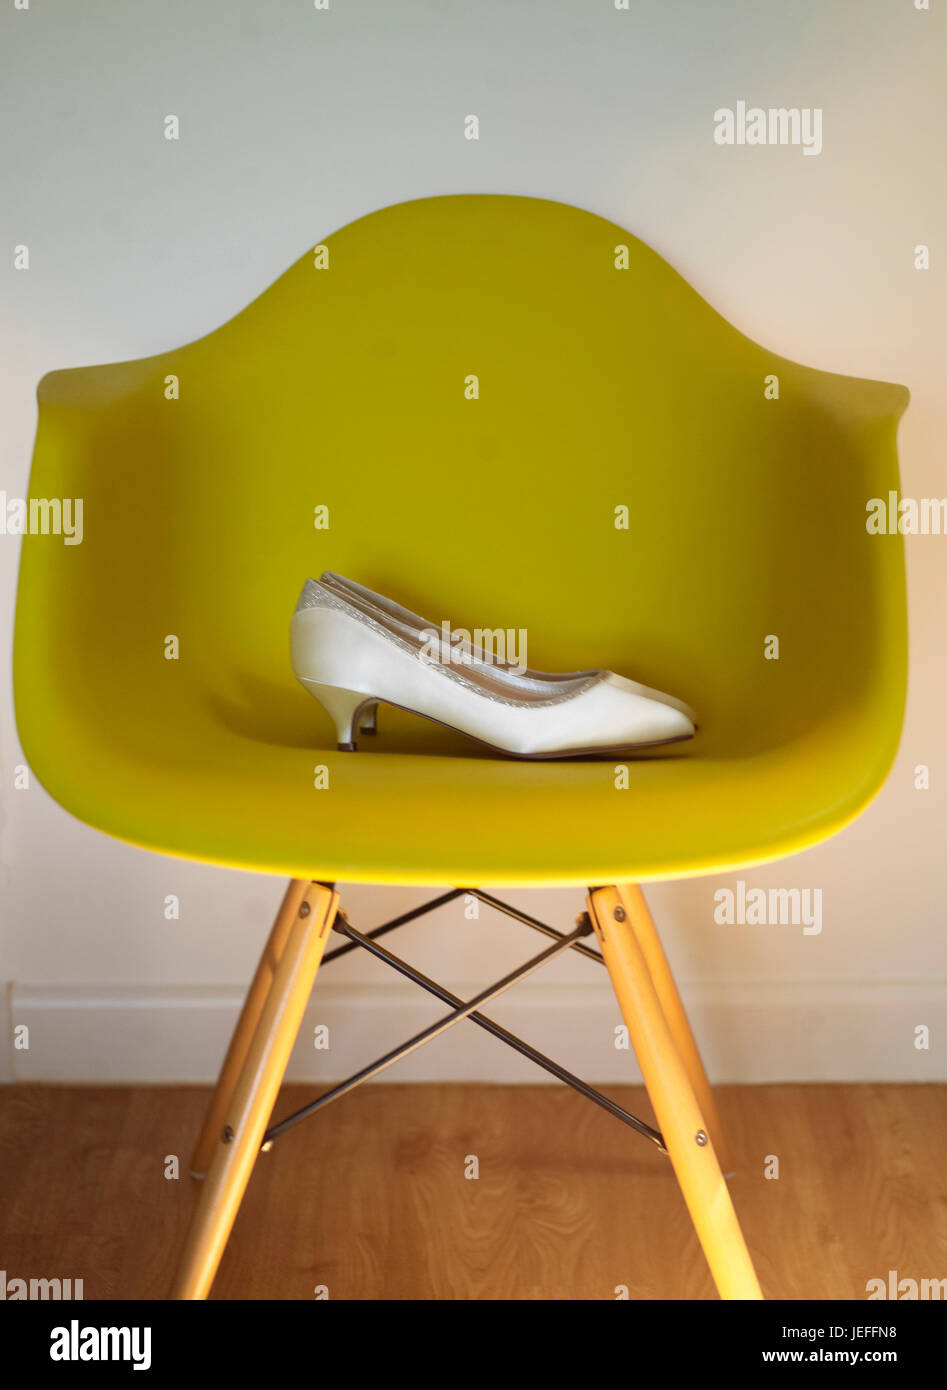 Wedding shoe on chair Stock Photo